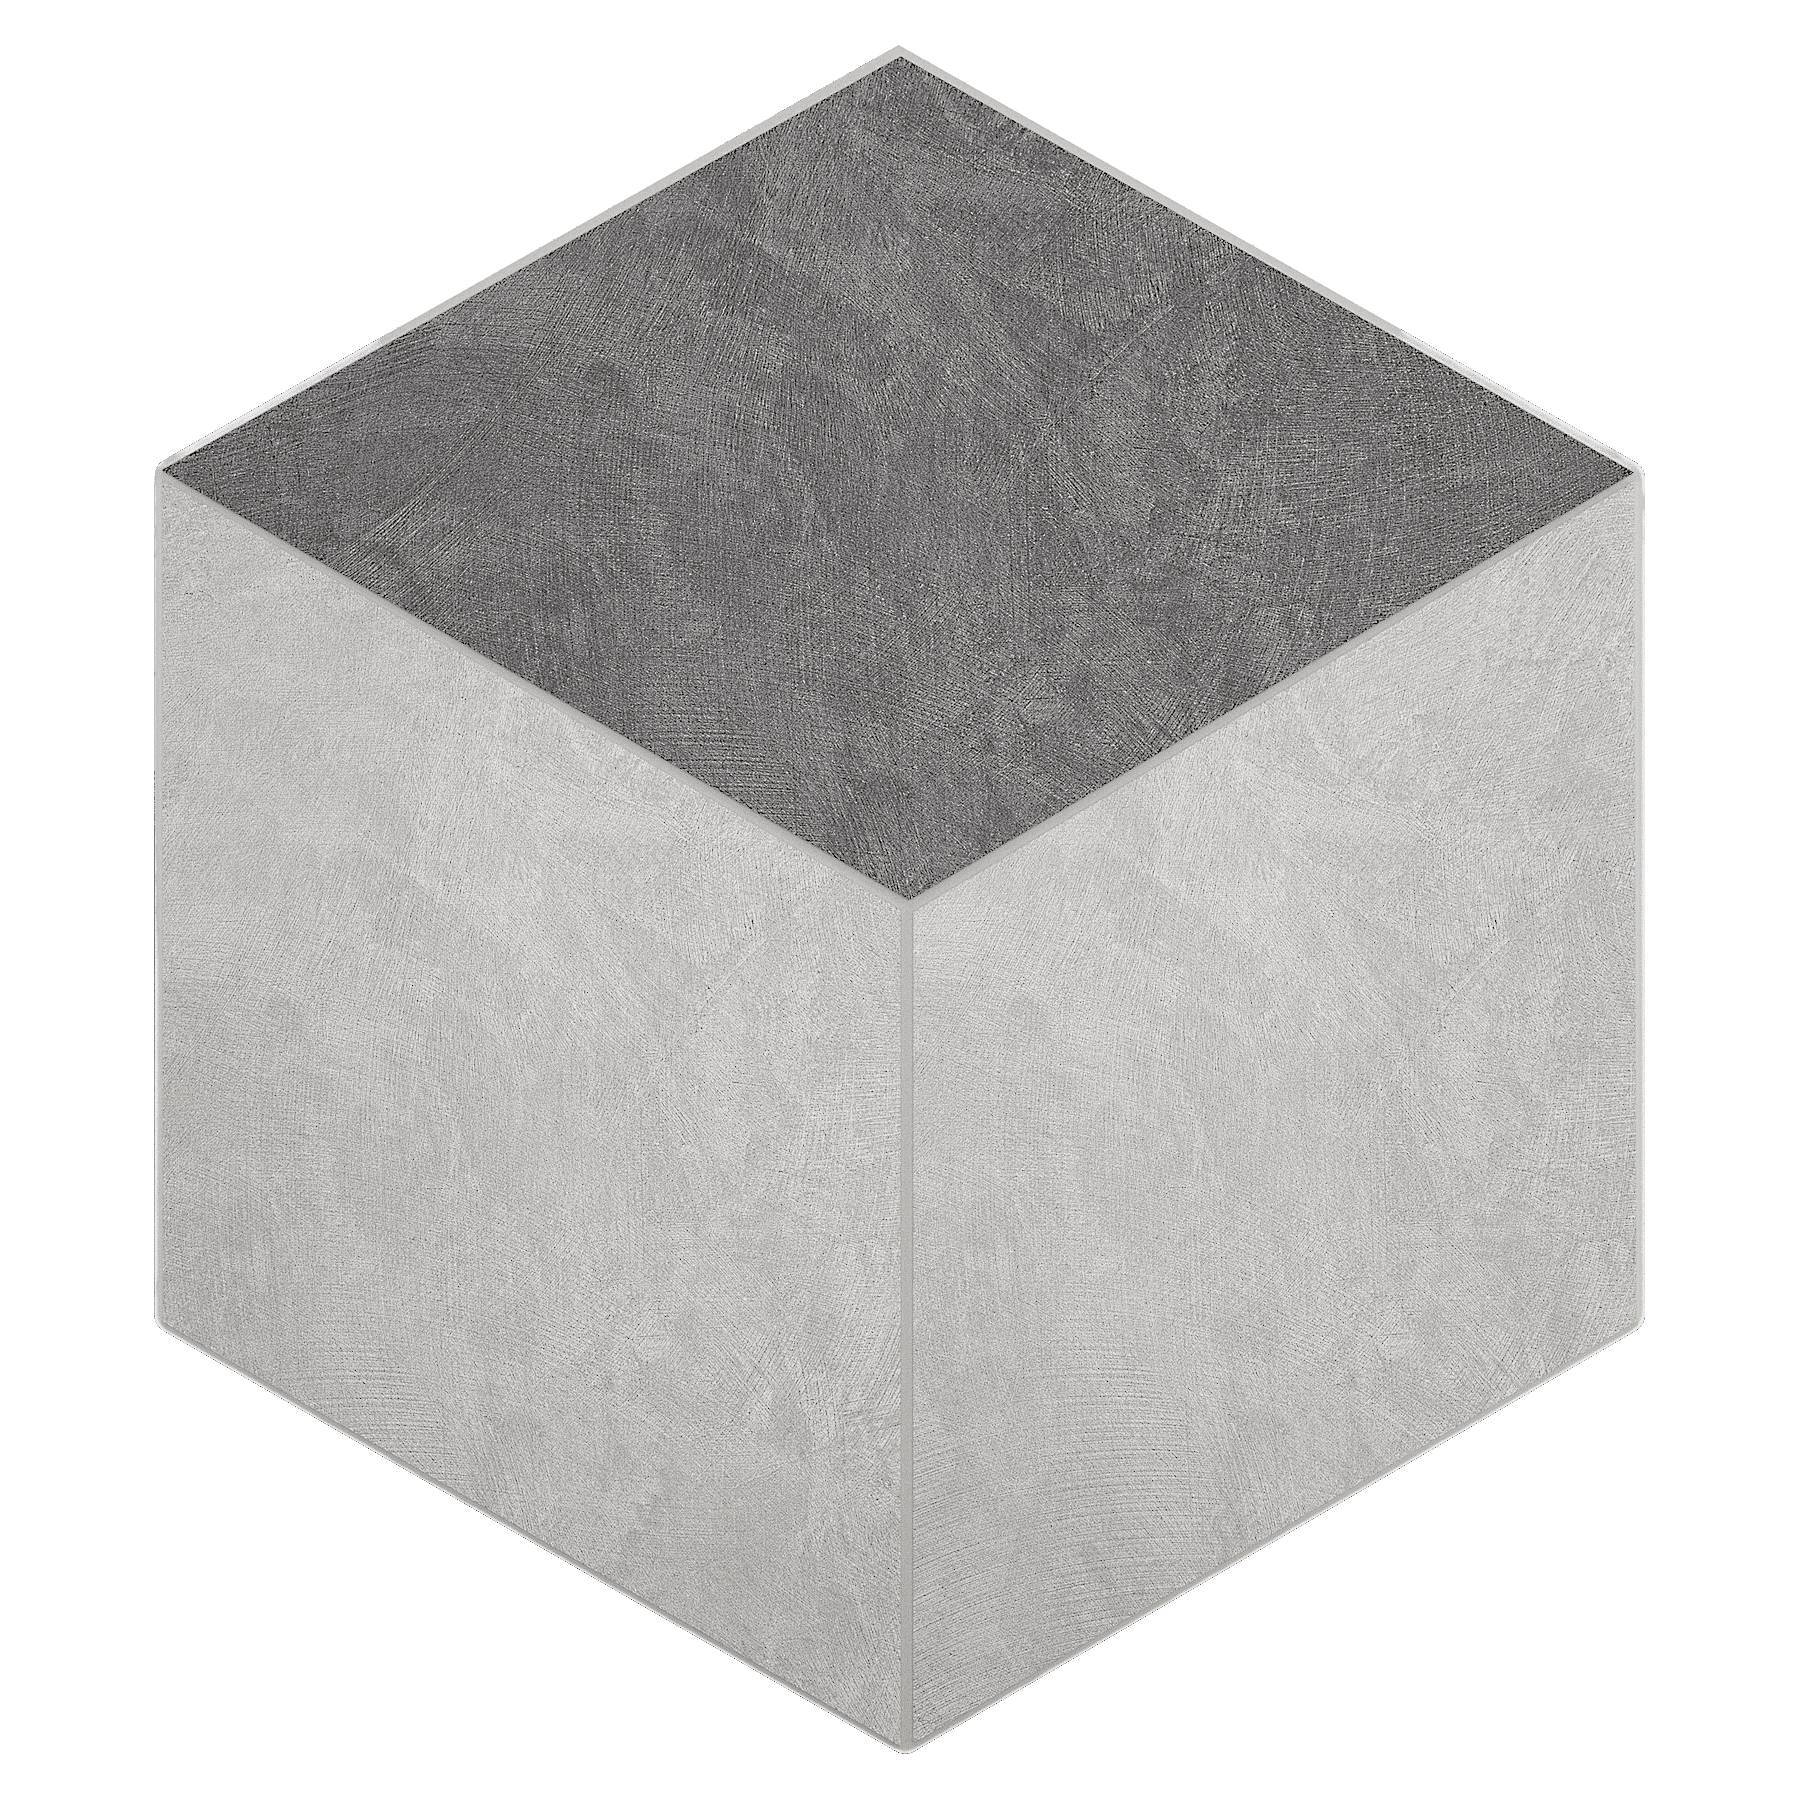 Мозаика Ametis Spectrum Milky White/Grey SR00/SR01 Cube Непол. 29x25 мозаика ametis spectrum chocolate sr07 cube непол 29x25